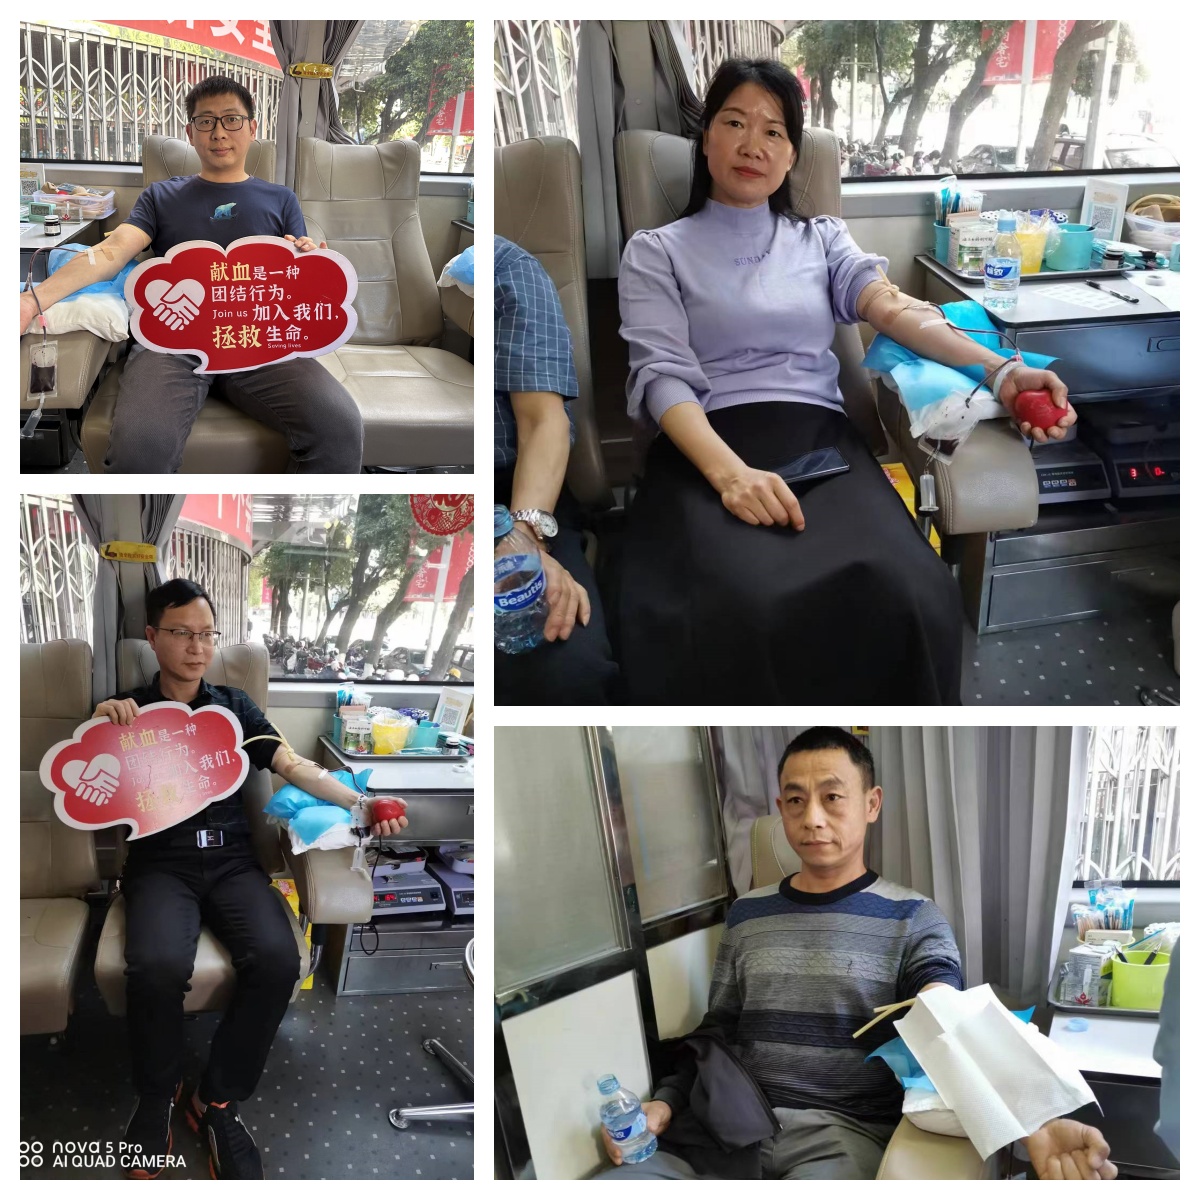 热血传真情 接力献爱心 | 武平县自然资源局举办爱心献血活动